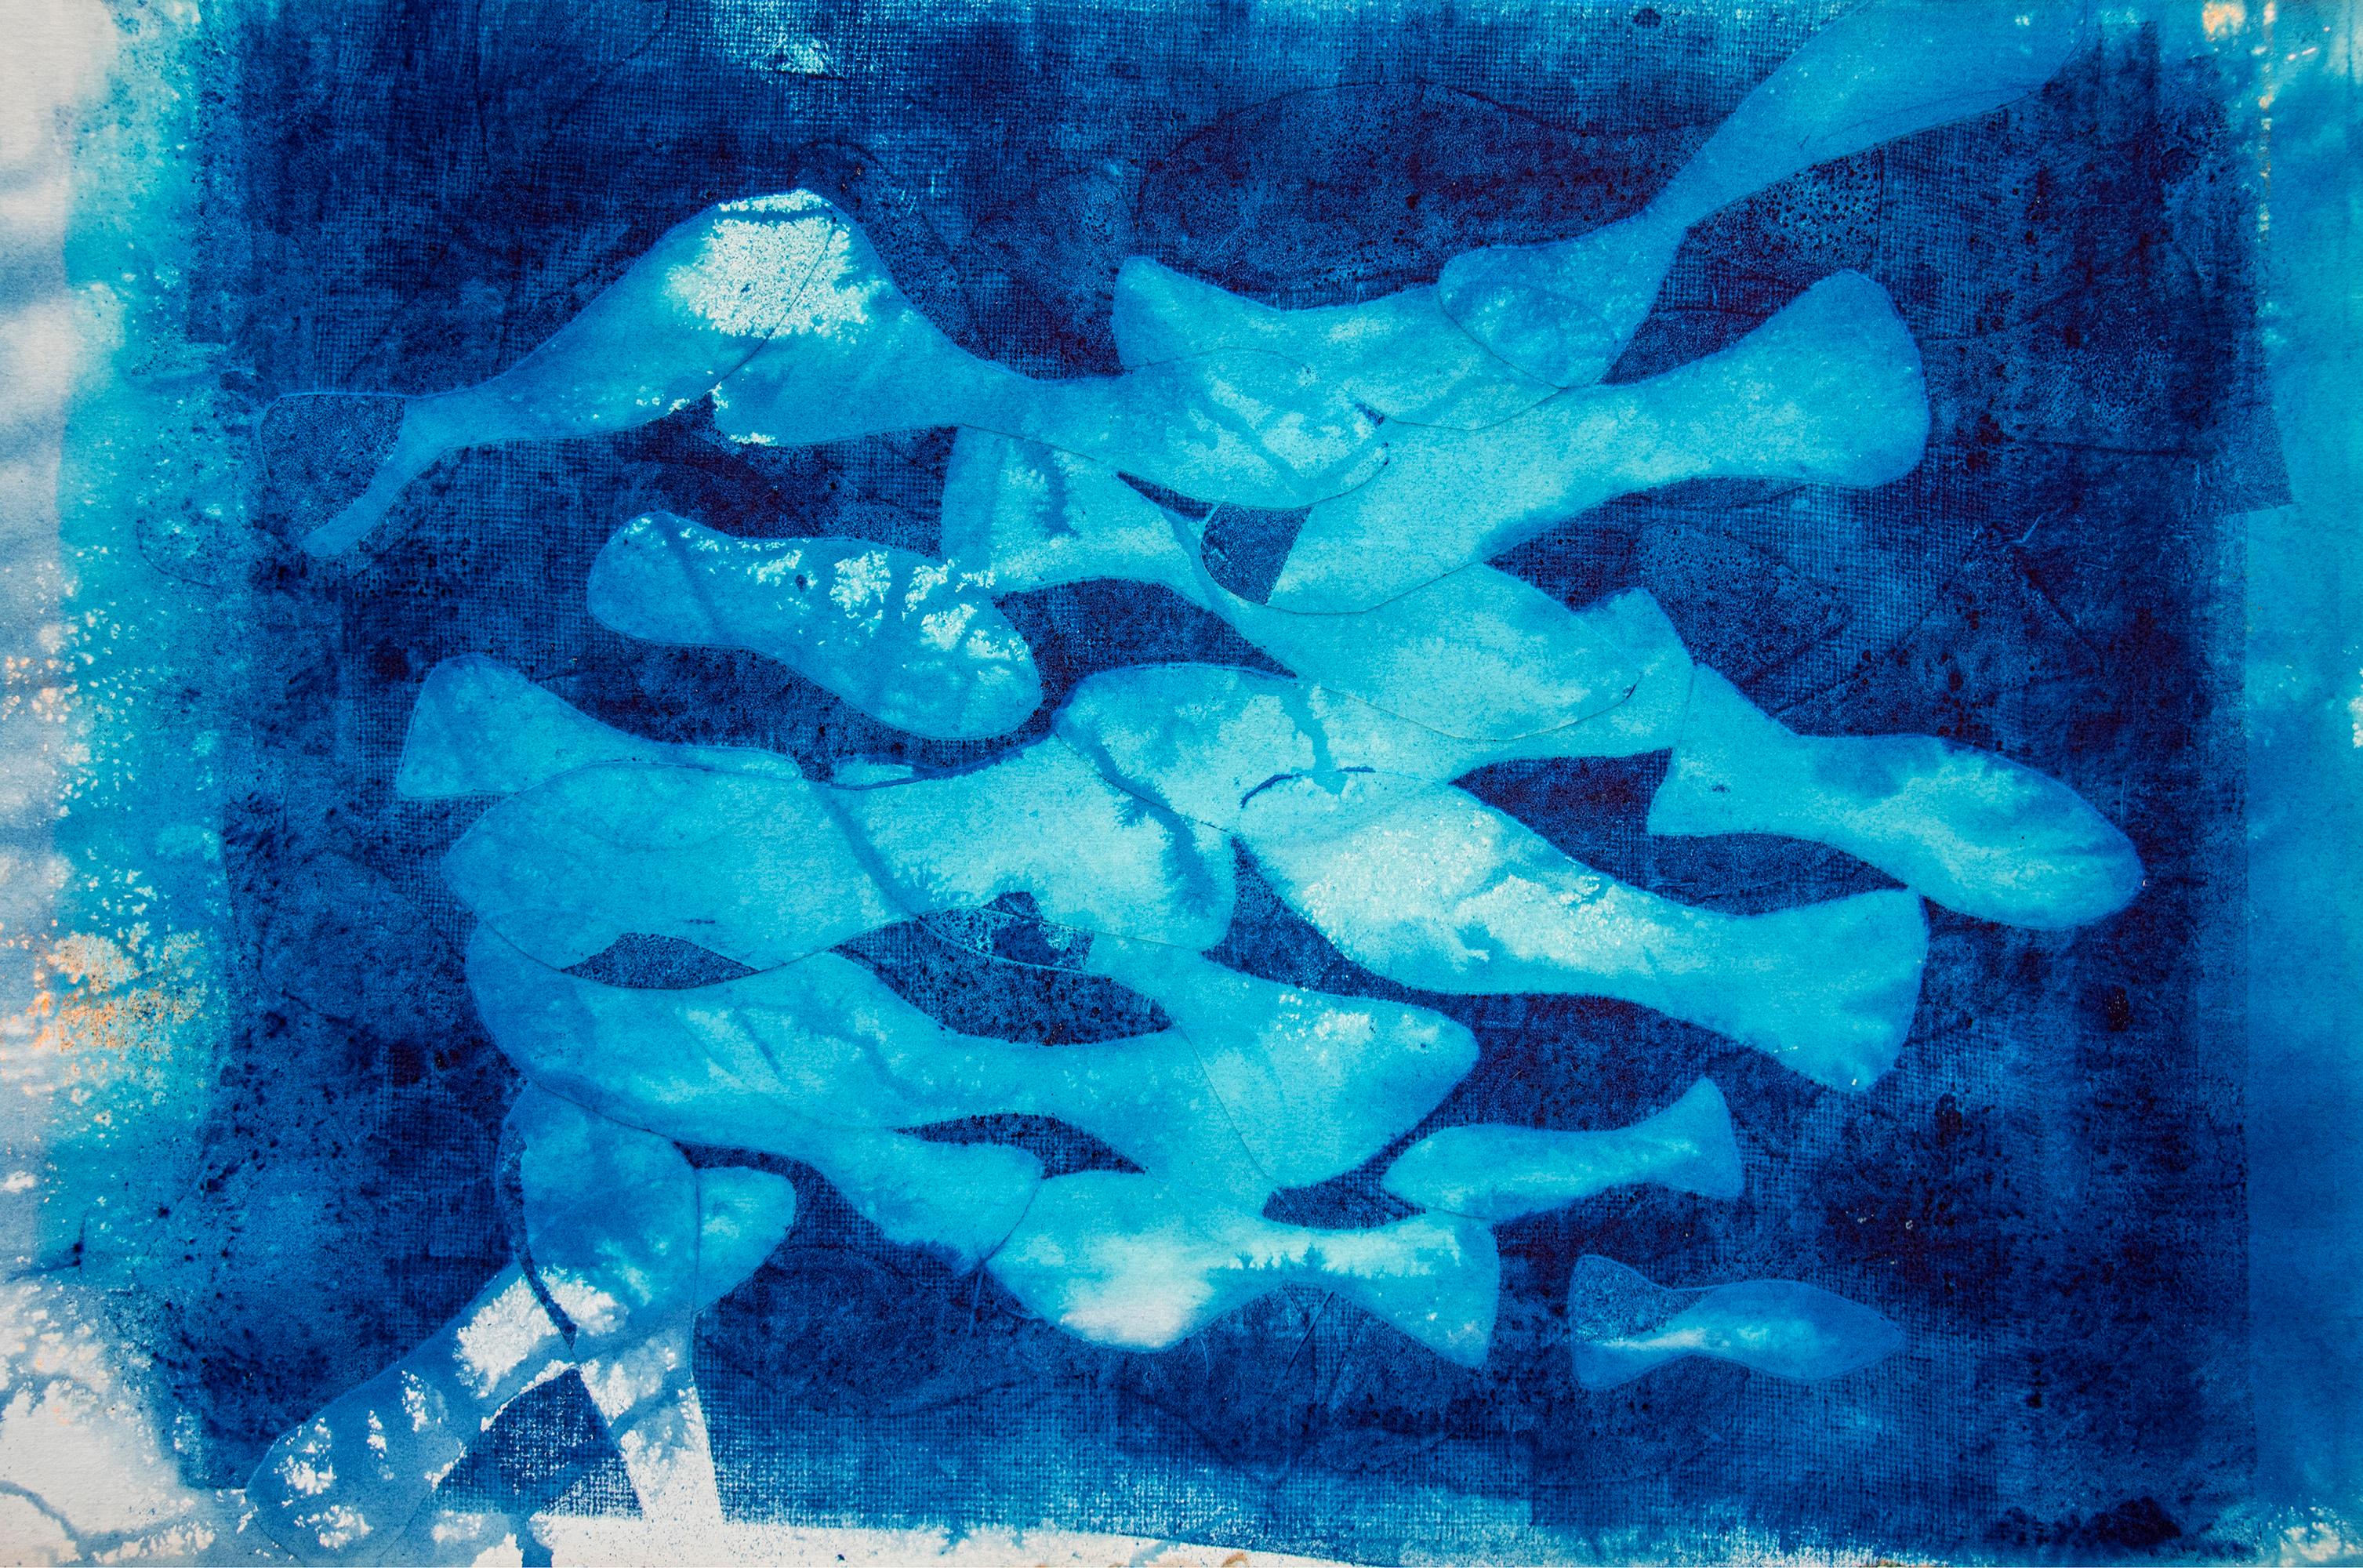 Animal Painting Enric Servera - Marina Abismal, peinture technique mixte, tons bleus, motifs de poissons méditerranéens